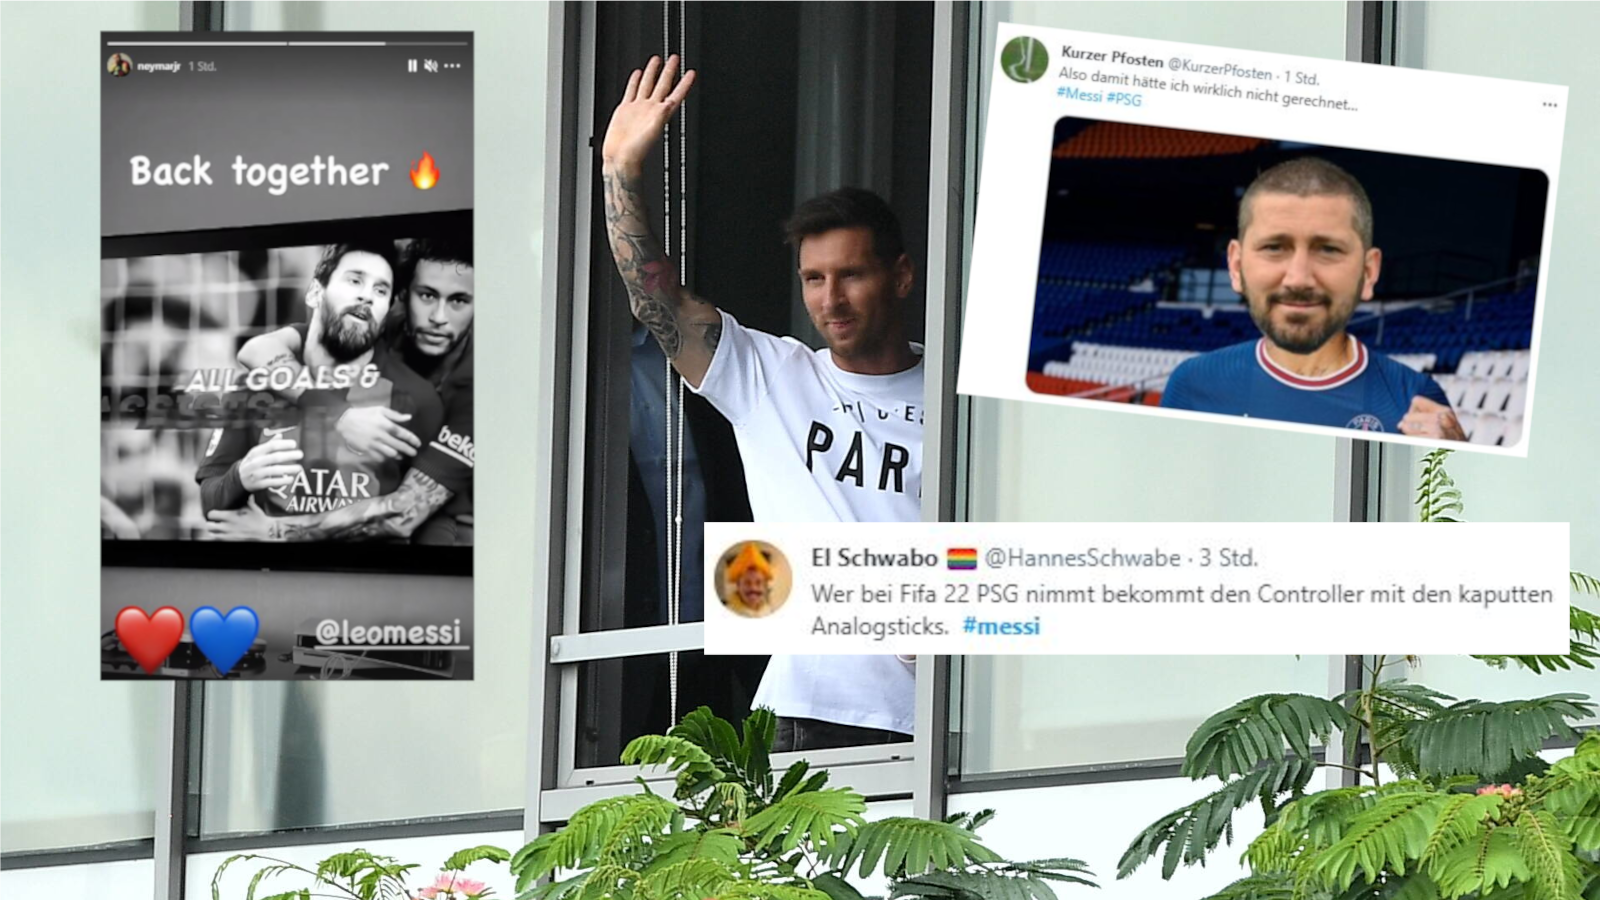 
                <strong>So reagiert das Internet auf das Messi-Beben</strong><br>
                Die Fußballwelt ist erschüttert. Einer der besten Fußballer aller Zeiten - immer in direkter Verbindung zu seinem geliebten Klub FC Barcelona - wechselt die Fronten. Ab dieser Saison wird Lionel Messi in seiner Profikarriere erstmals für einen anderen Verein als Barca auflaufen. "La Pulga" verabschiedete sich vor zwei Tagen noch tränenreich in Katalonien, nun schlug er in Paris auf, um einen Vertrag bei PSG zu unterschreiben. So reagiert das Internet auf den Fußball-Urknall.
              